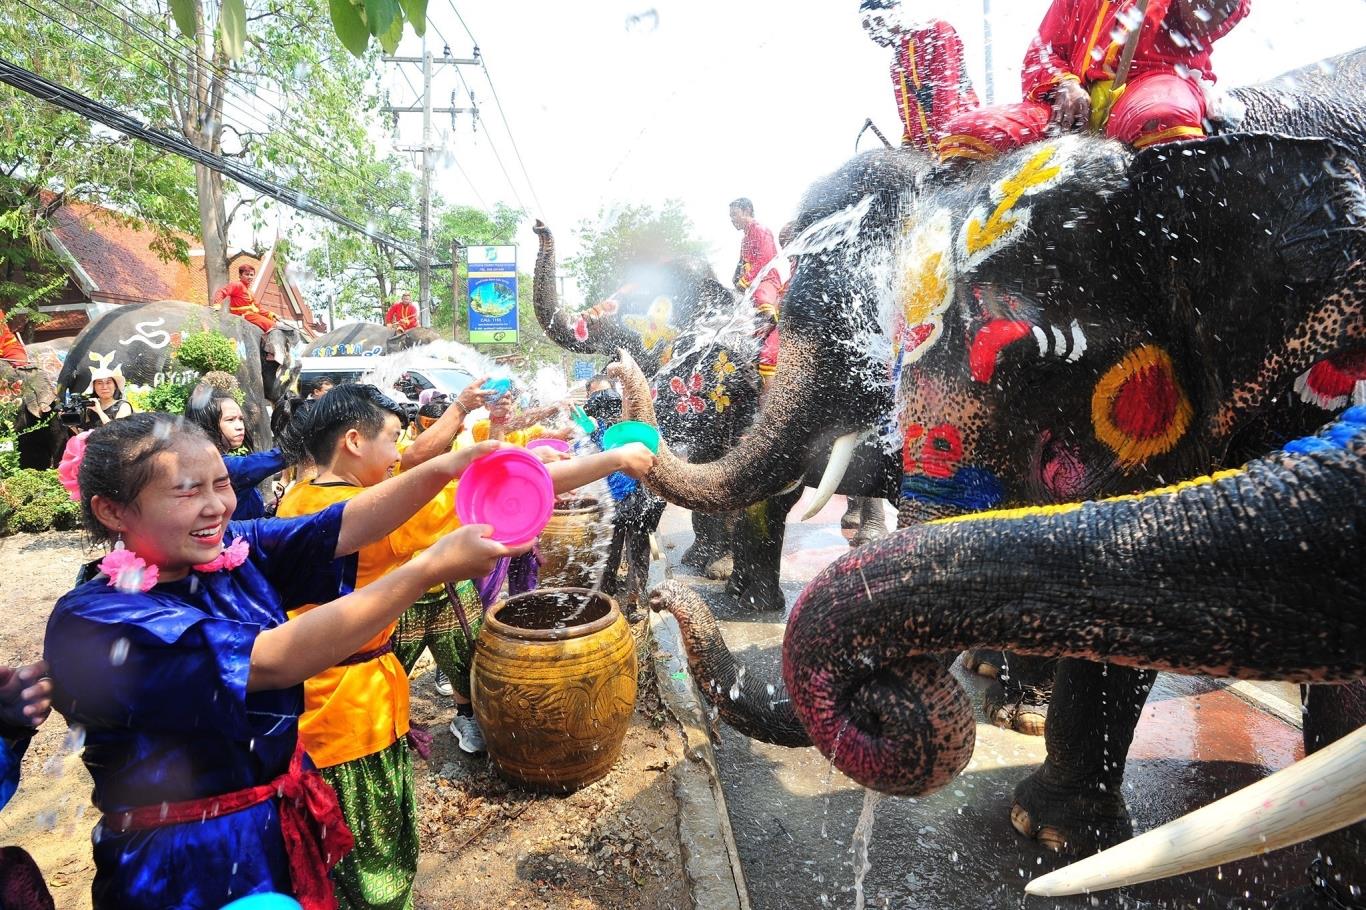 2. Tham gia lễ hội té nước Songkran